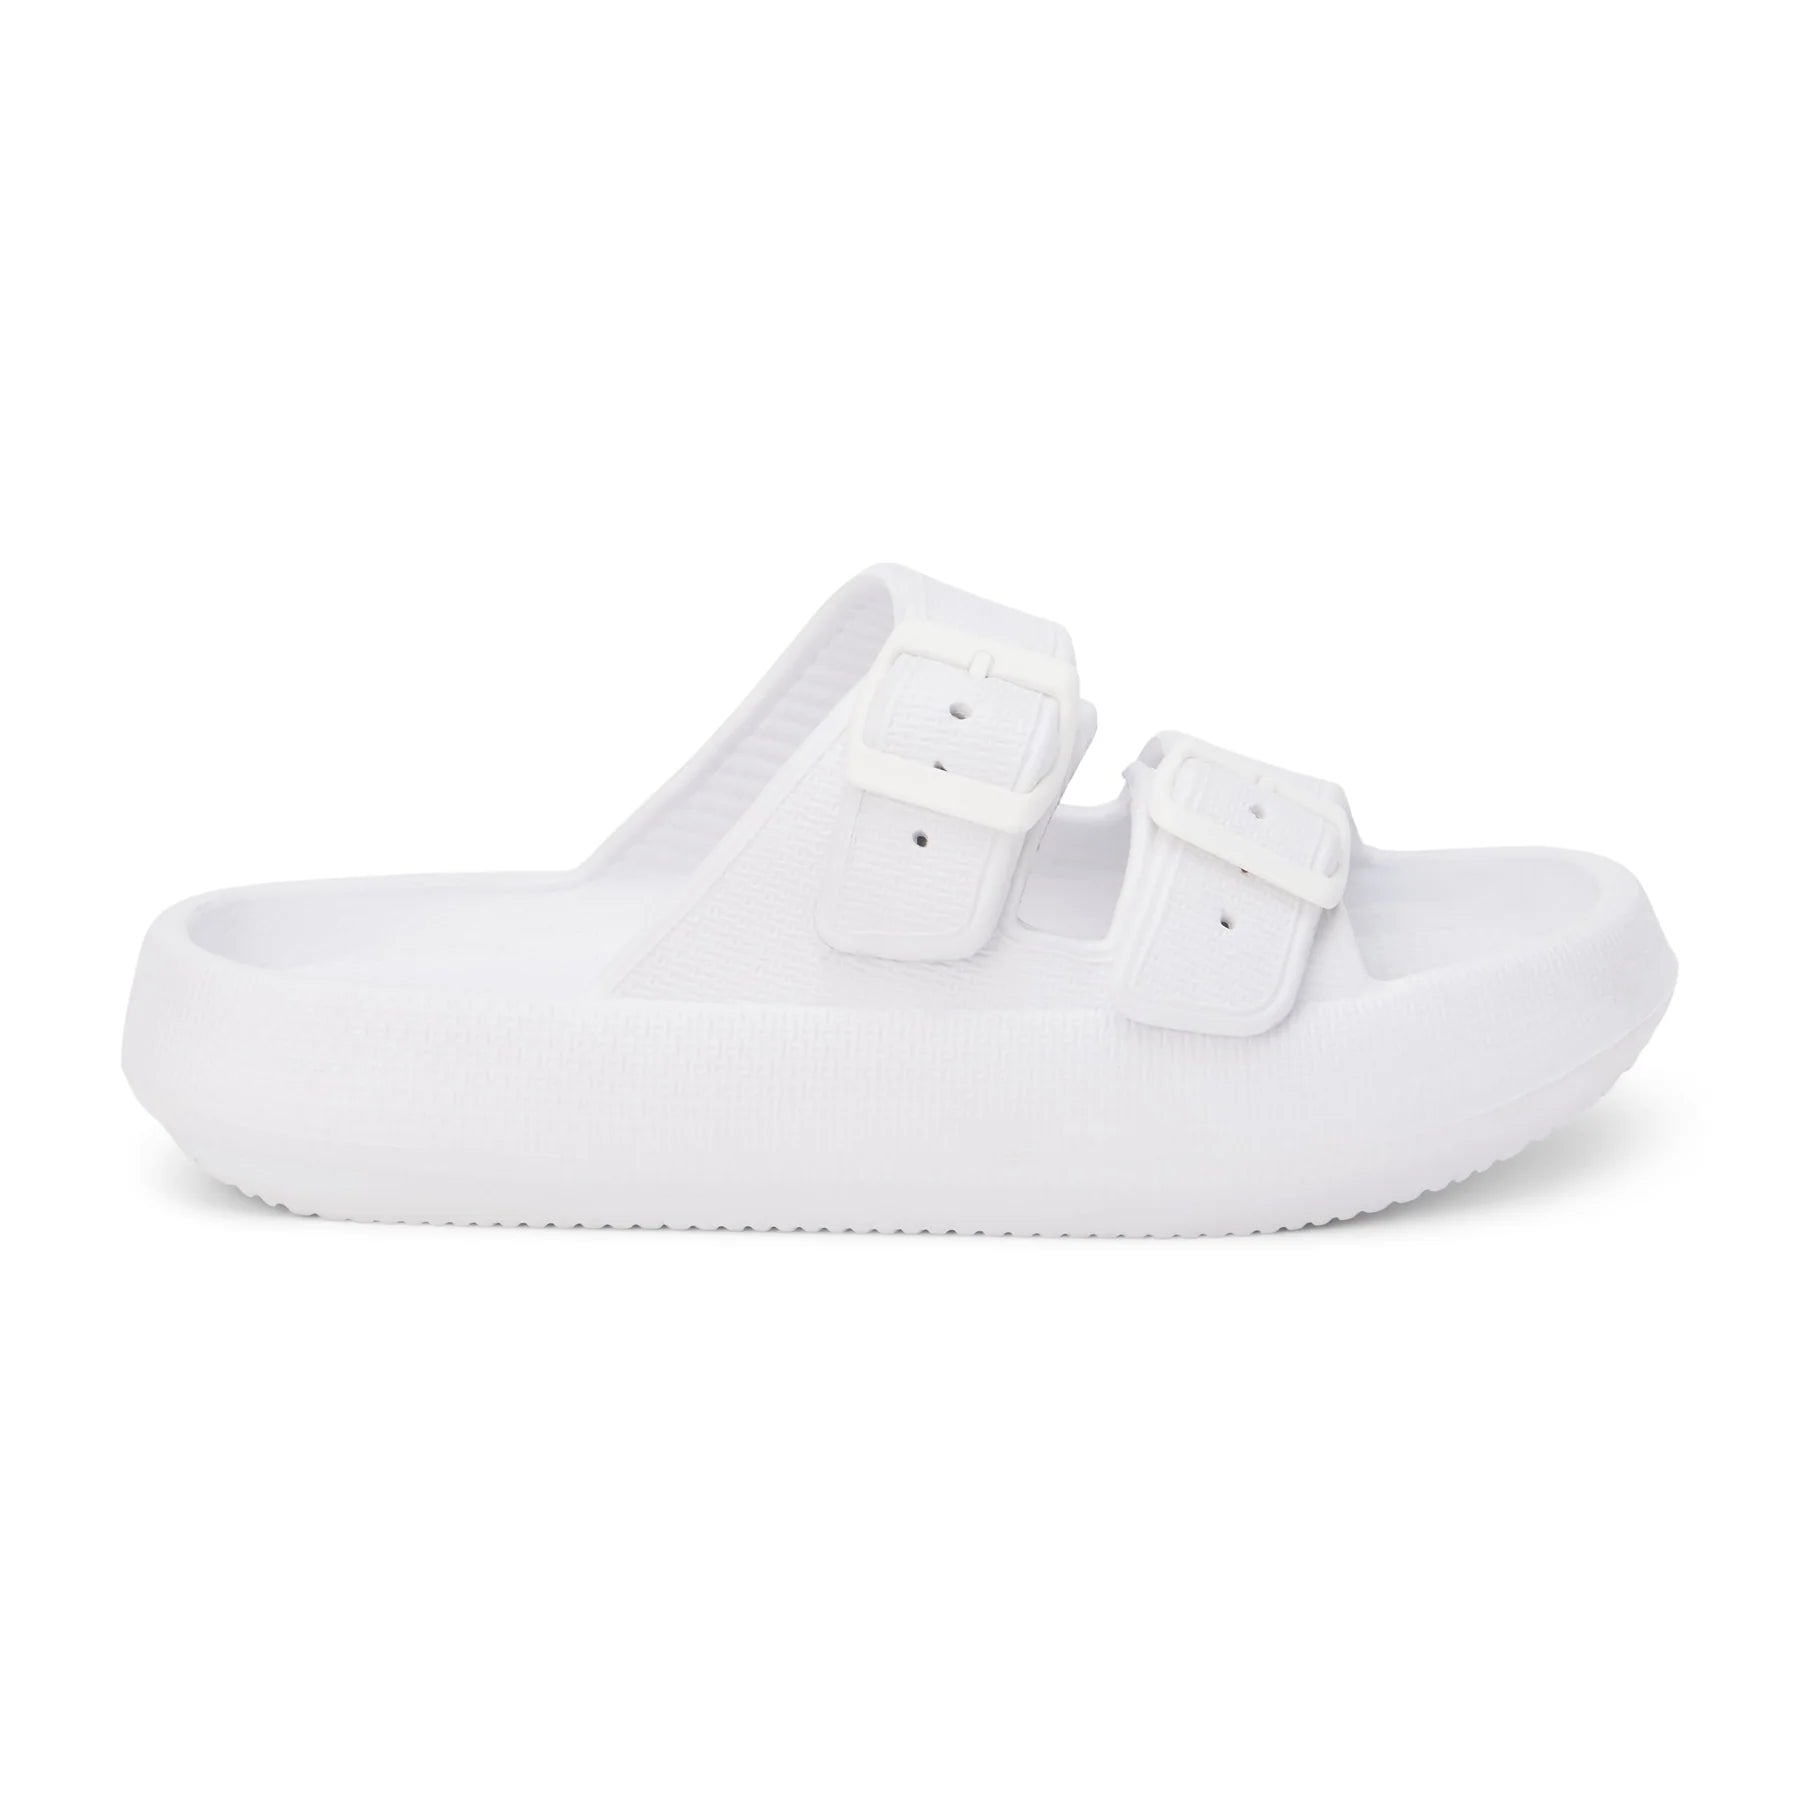 White Cushion Slide Sandals